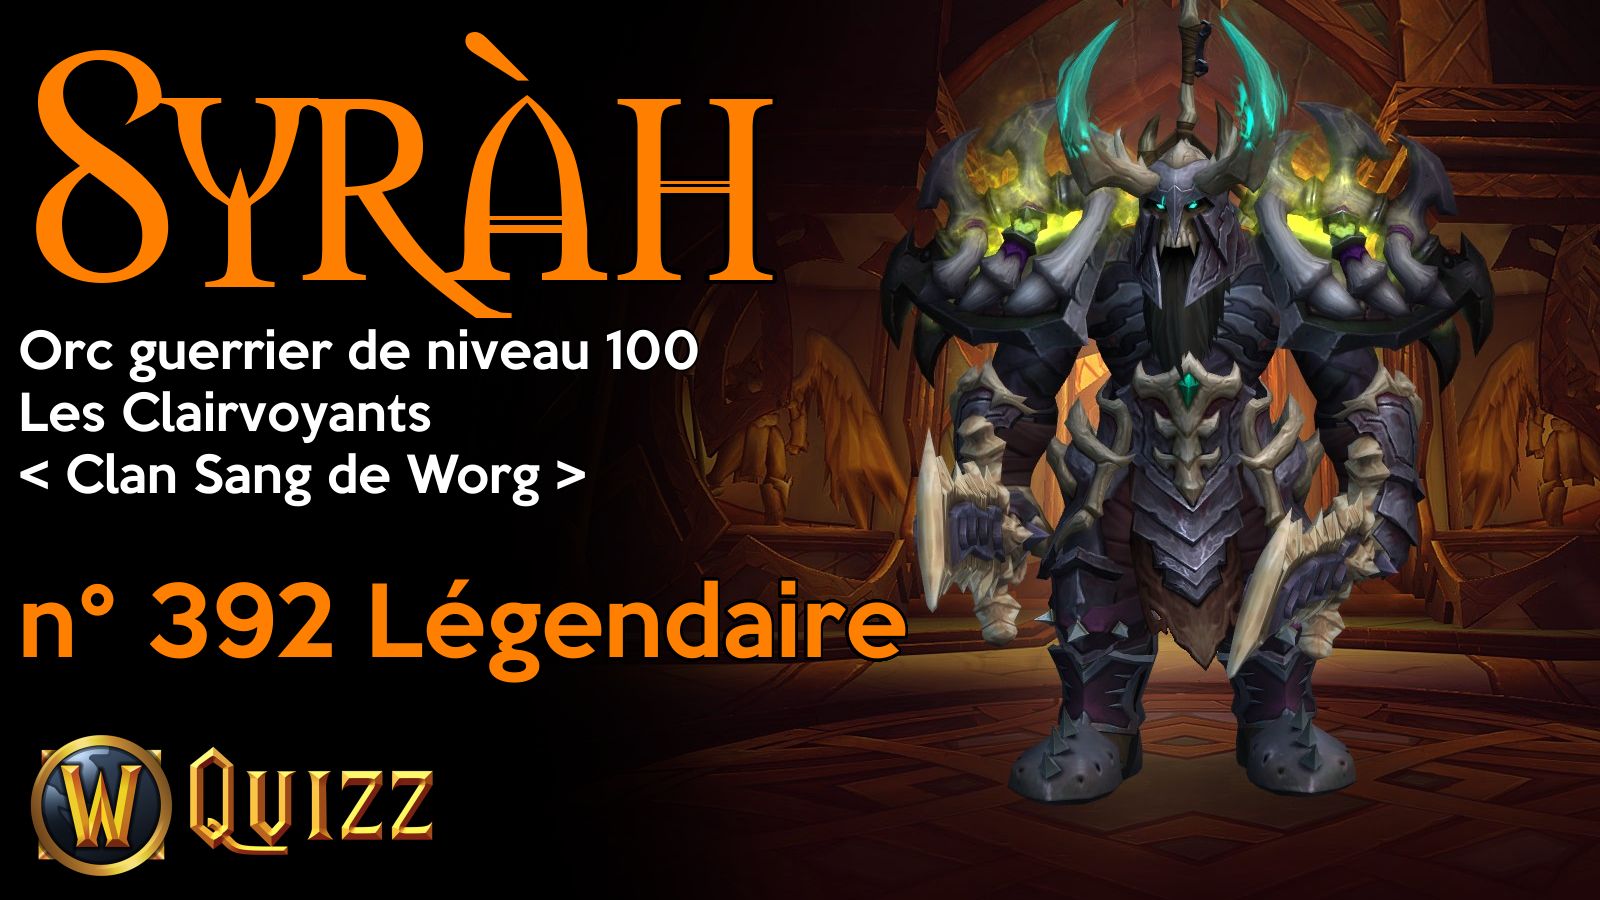 Syràh, Orc guerrier de niveau 100, Les Clairvoyants